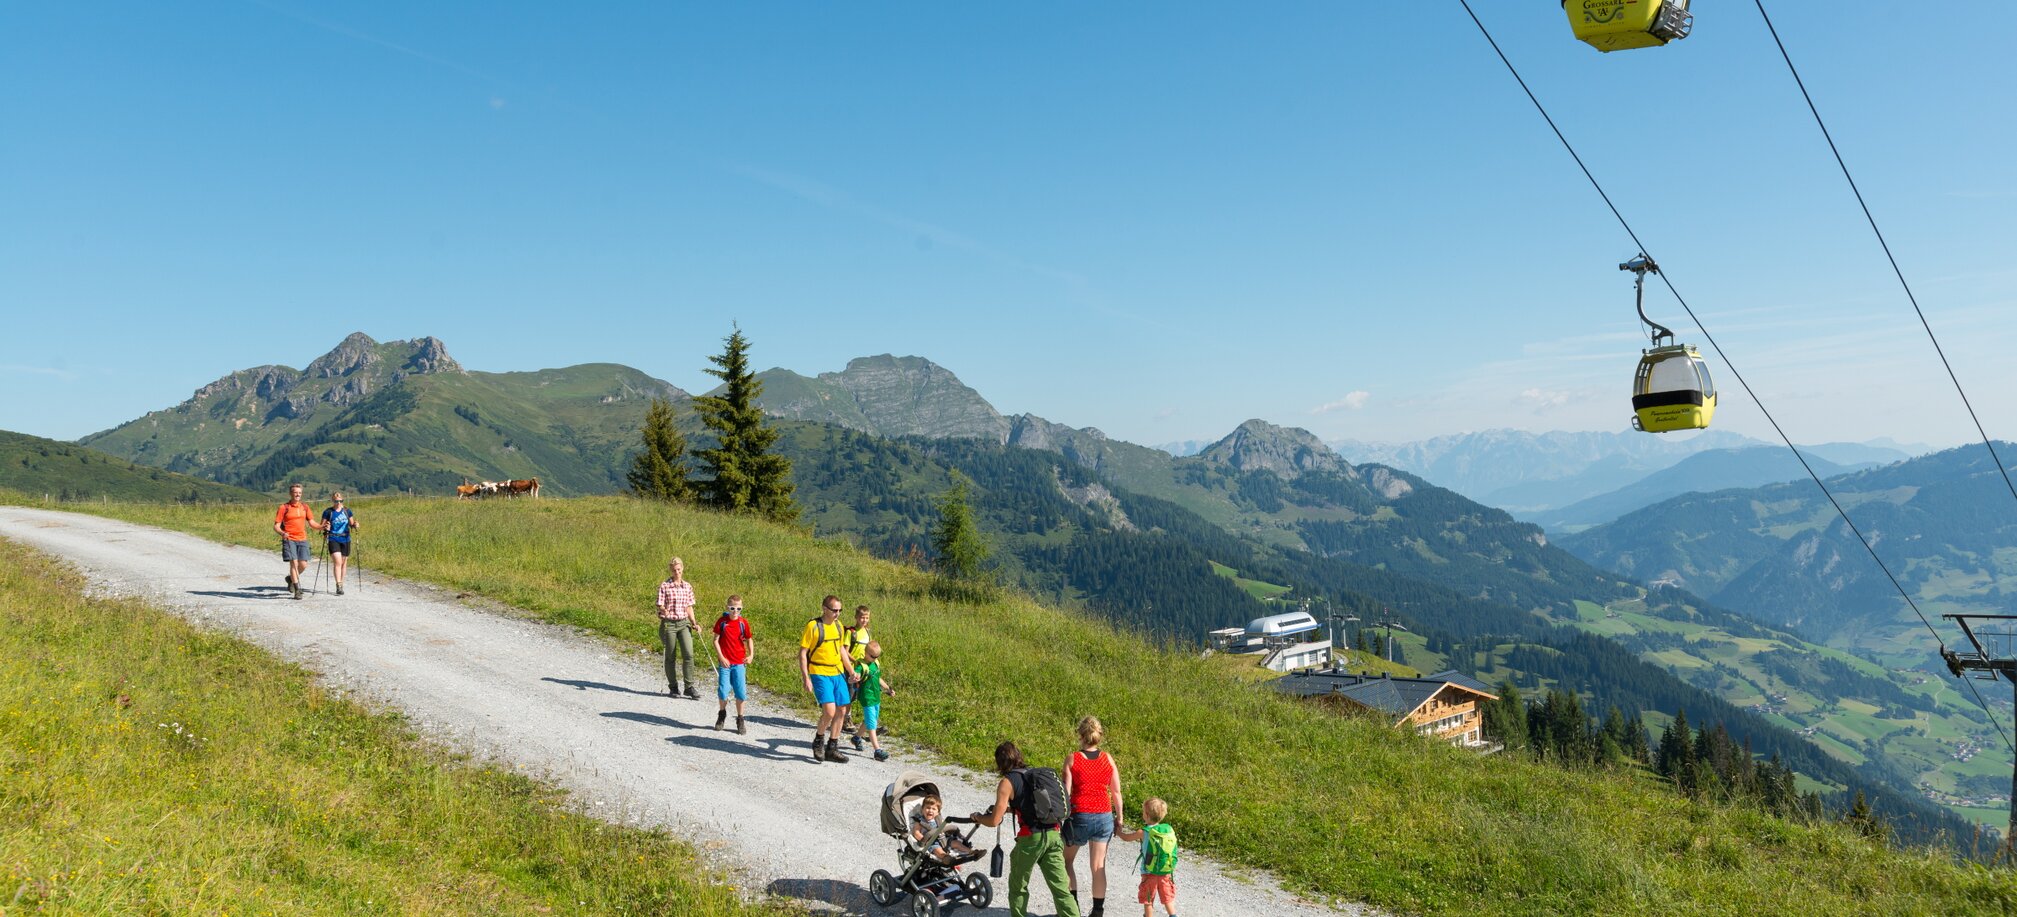 Wandern im Tal der Almen im Großarltal in Ski amadé - Sommer in den Bergen in Österreich